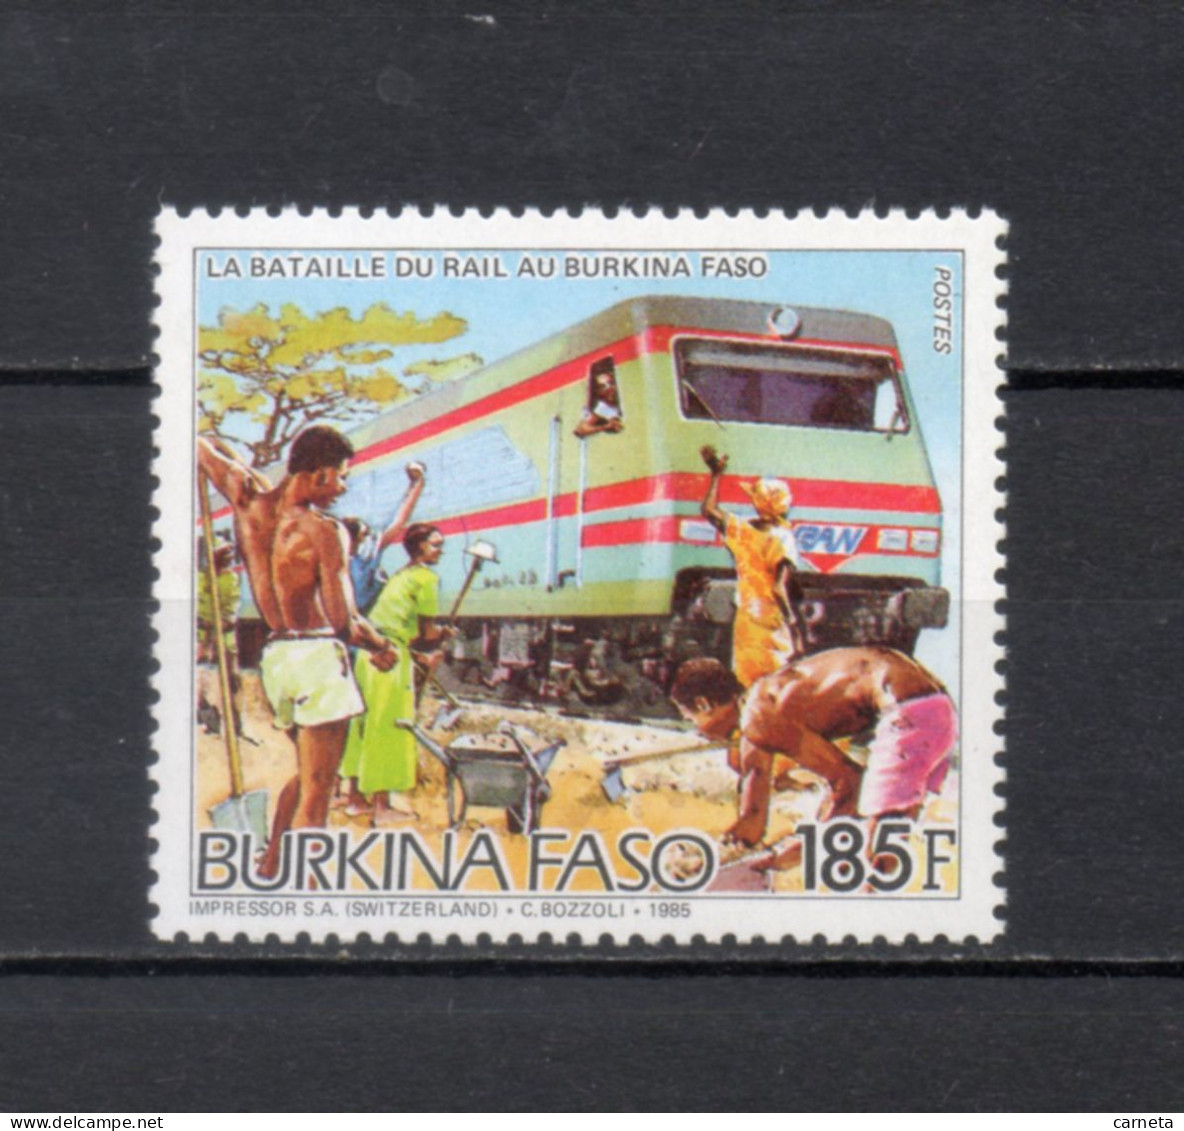 BURKINA FASO  N° 692    NEUF SANS CHARNIERE  COTE  2.00€  TRAIN - Burkina Faso (1984-...)